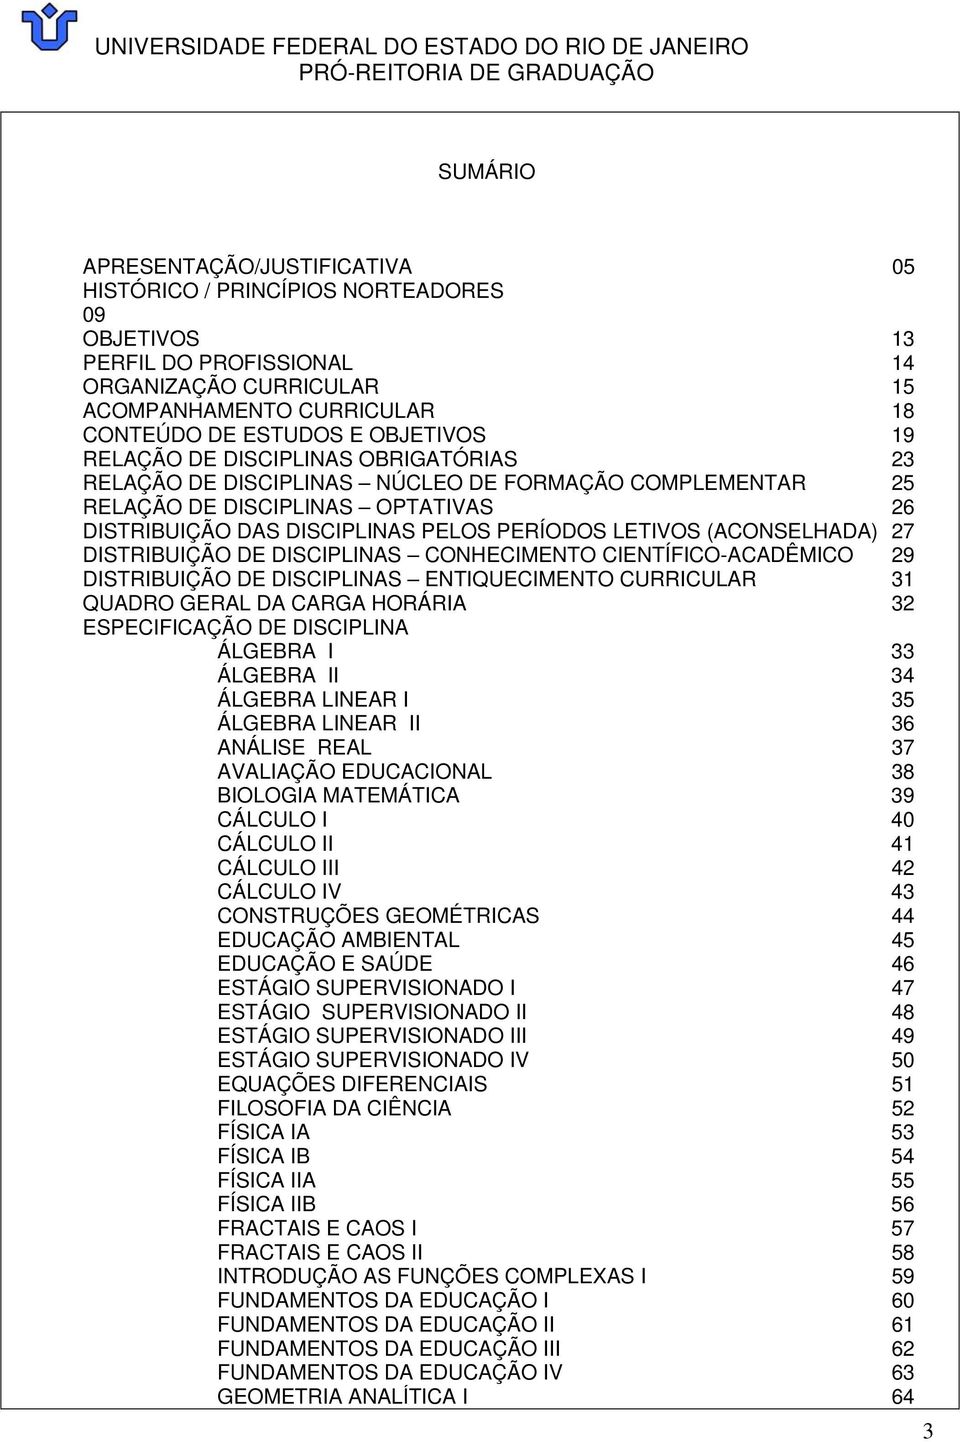 (ACONSELHADA) 27 DISTRIBUIÇÃO DE DISCIPLINAS CONHECIMENTO CIENTÍFICO-ACADÊMICO 29 DISTRIBUIÇÃO DE DISCIPLINAS ENTIQUECIMENTO CURRICULAR 31 QUADRO GERAL DA CARGA HORÁRIA 32 ESPECIFICAÇÃO DE DISCIPLINA